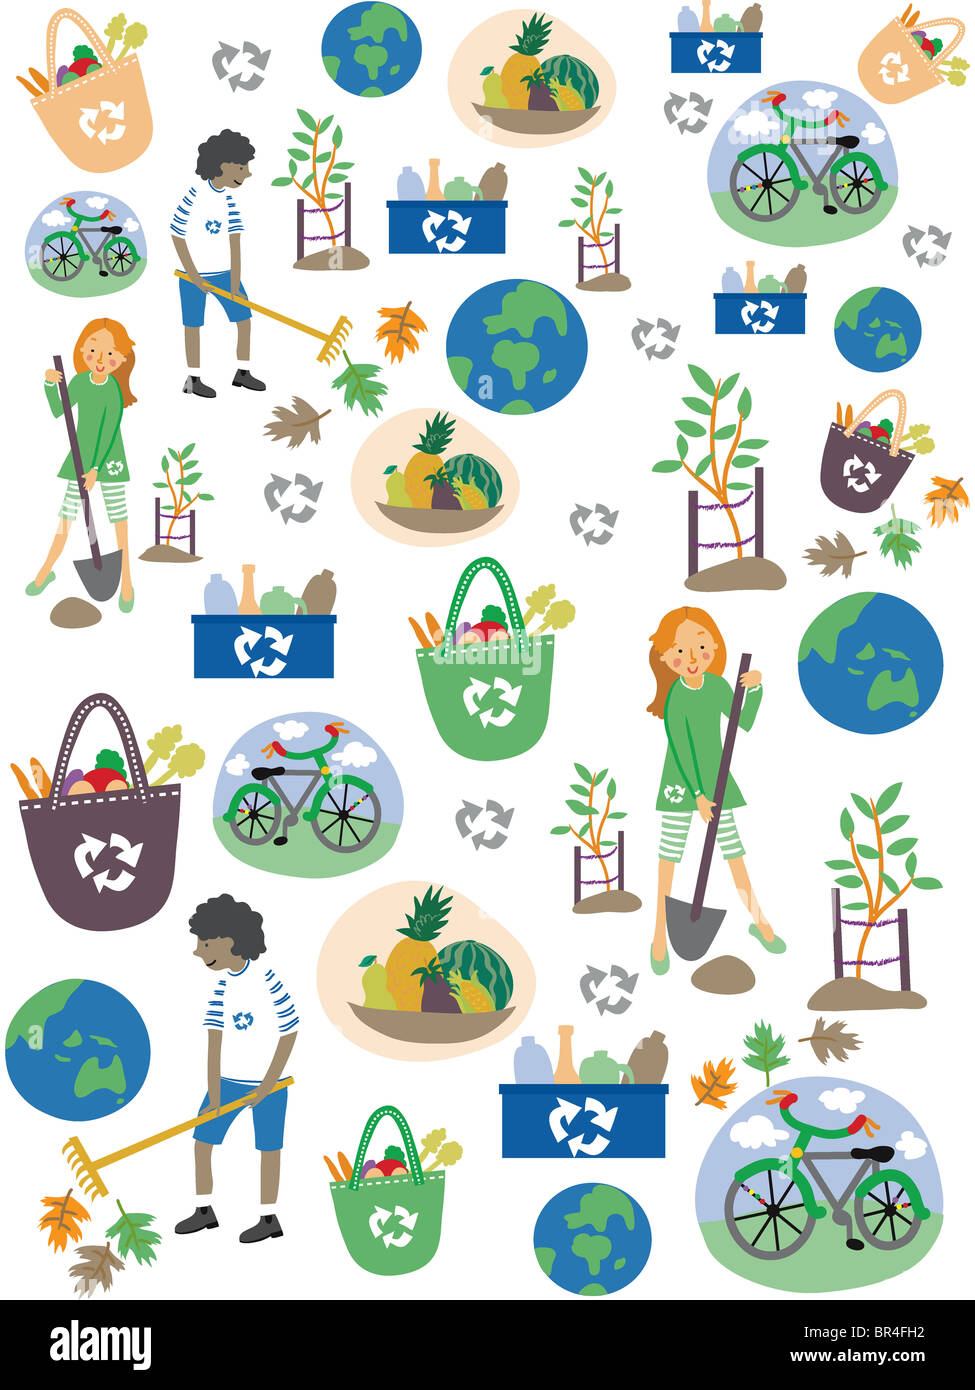 Un modèle pour la Journée de la terre avec les enfants, le recyclage, la terre et les vélos Banque D'Images